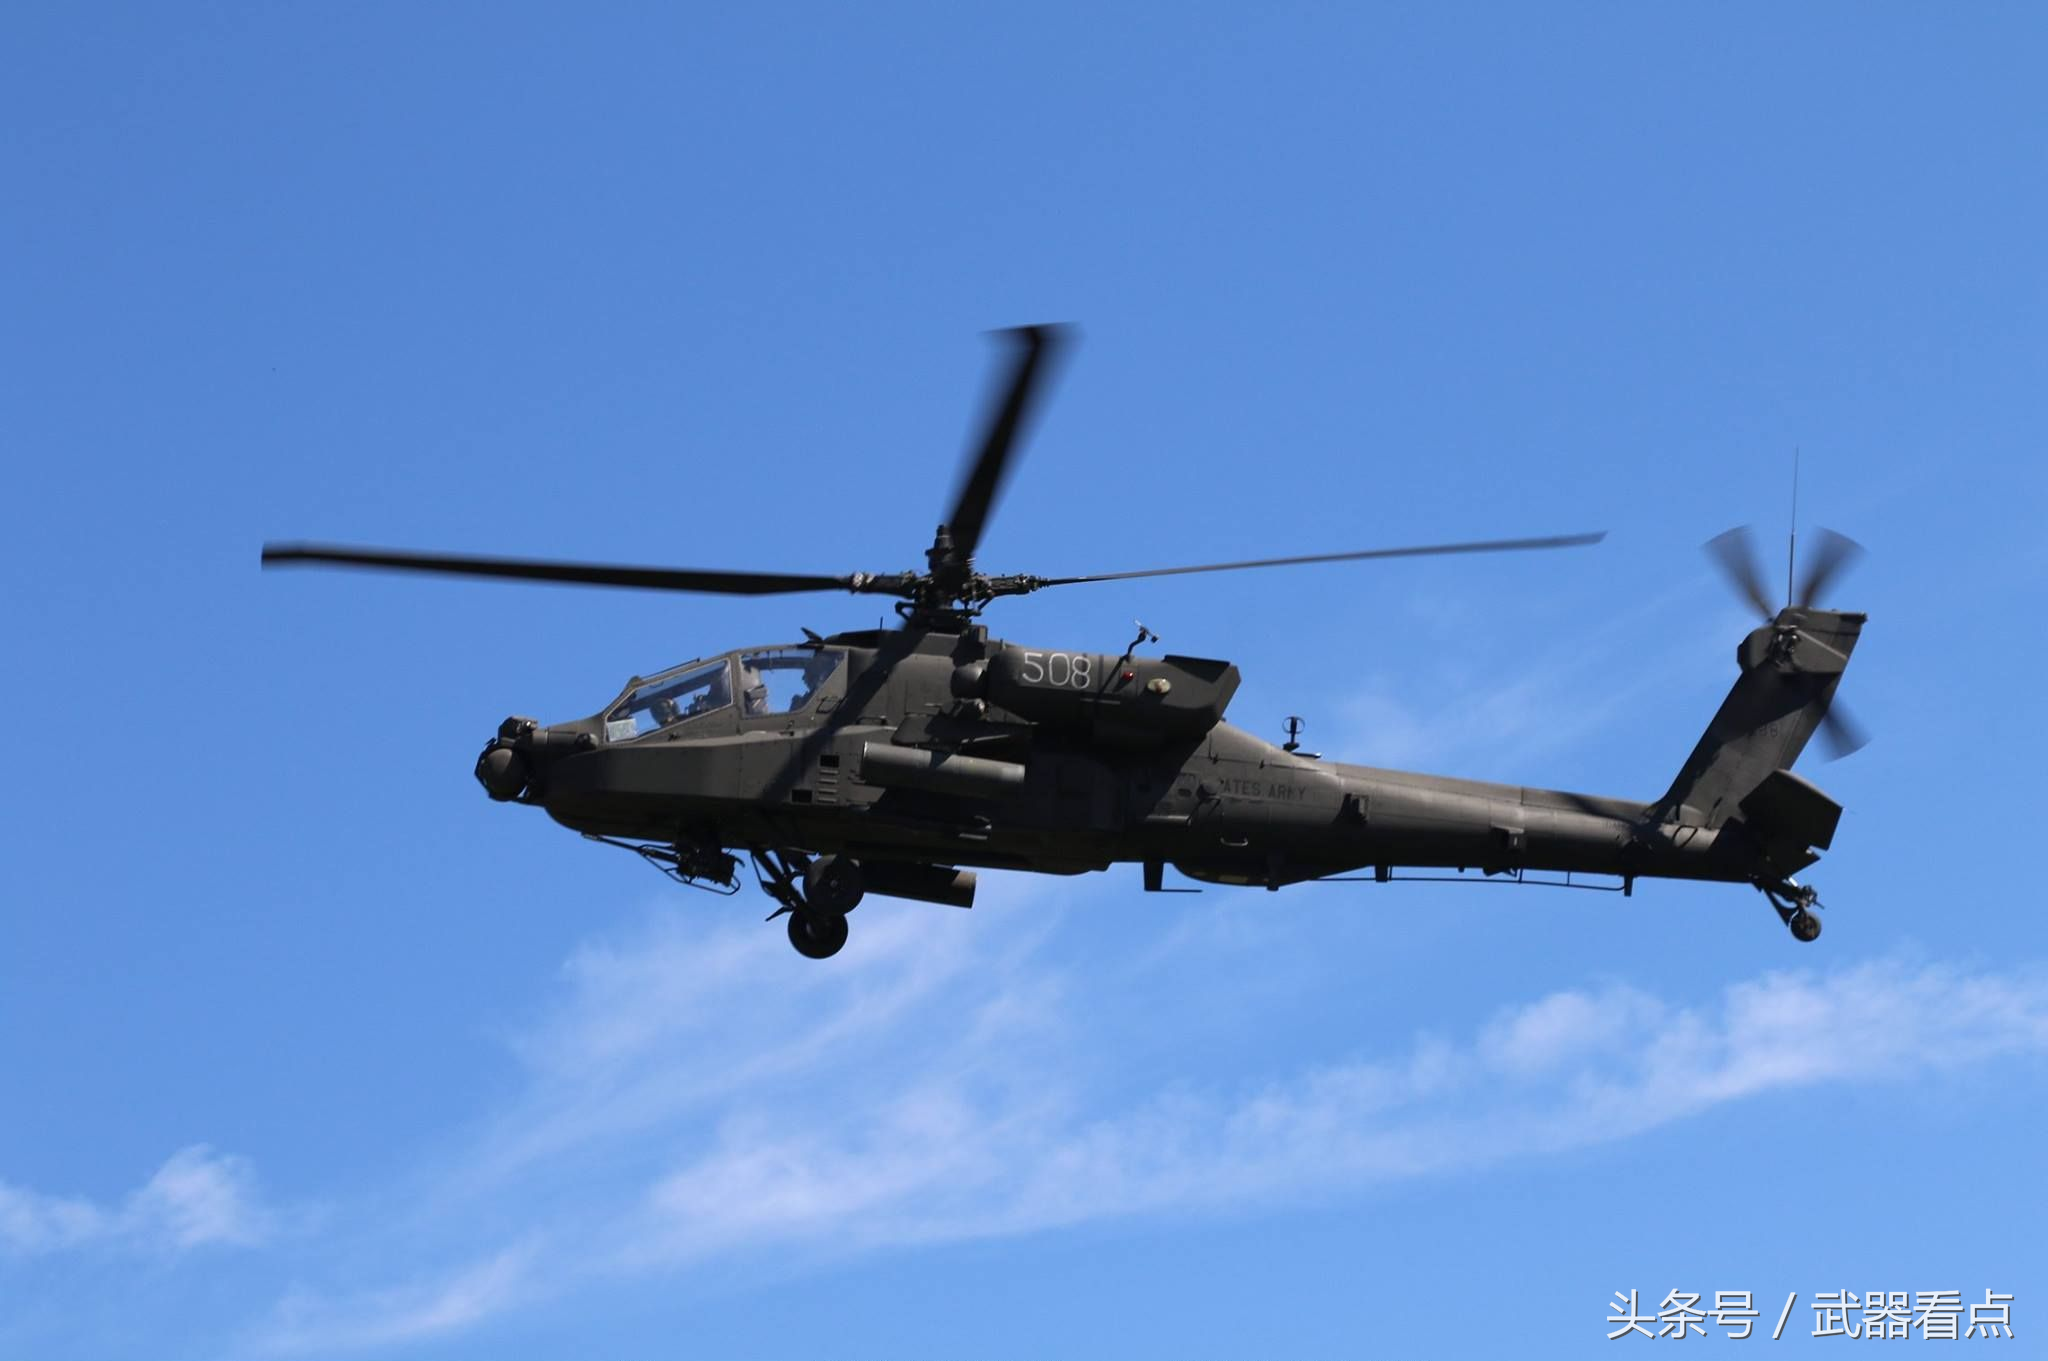 ah64阿帕奇武装直升机高清相片